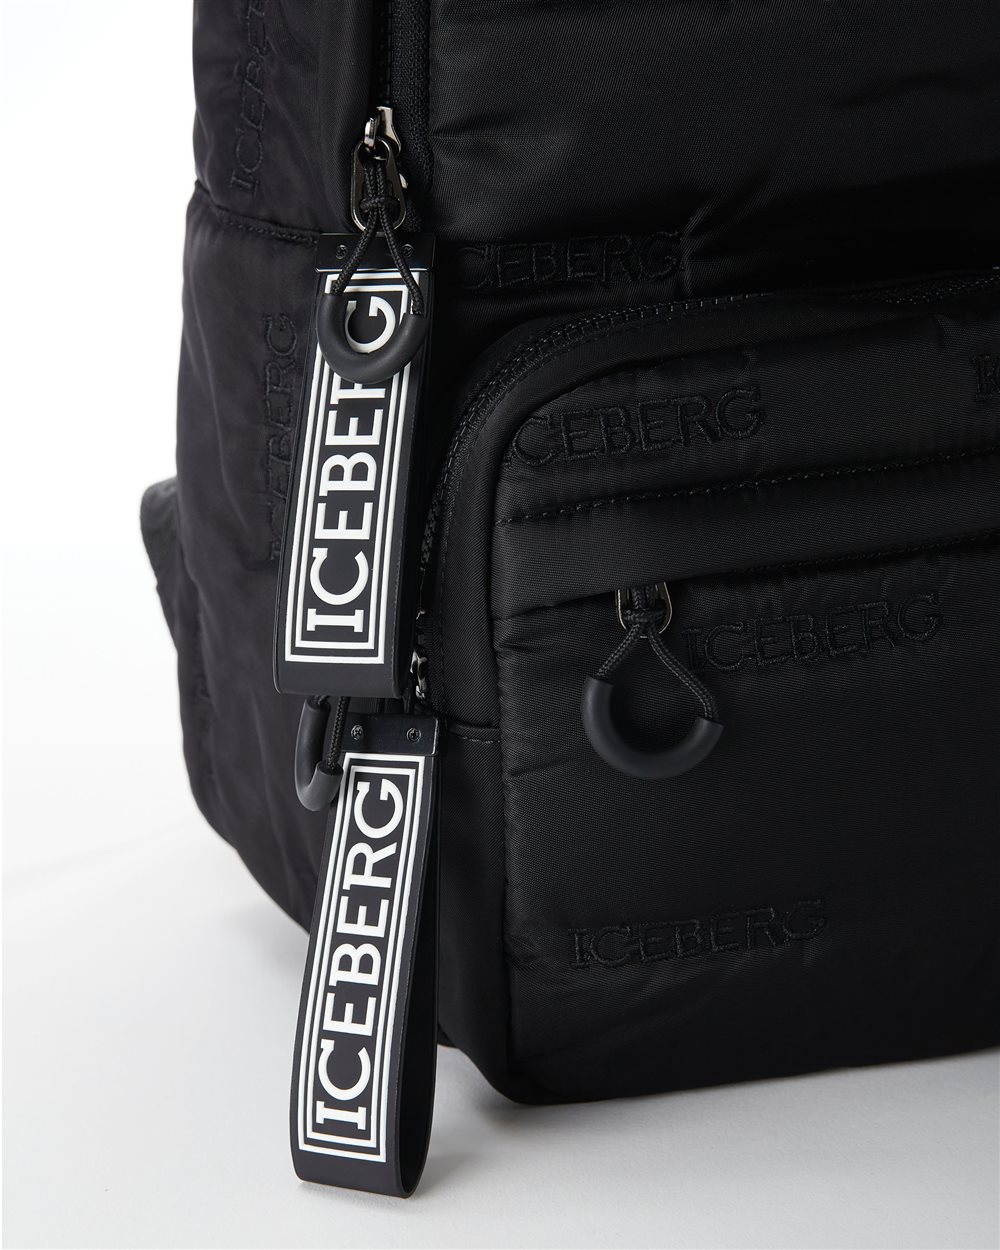 Nylon backpack with allover logo - Iceberg - Official Website